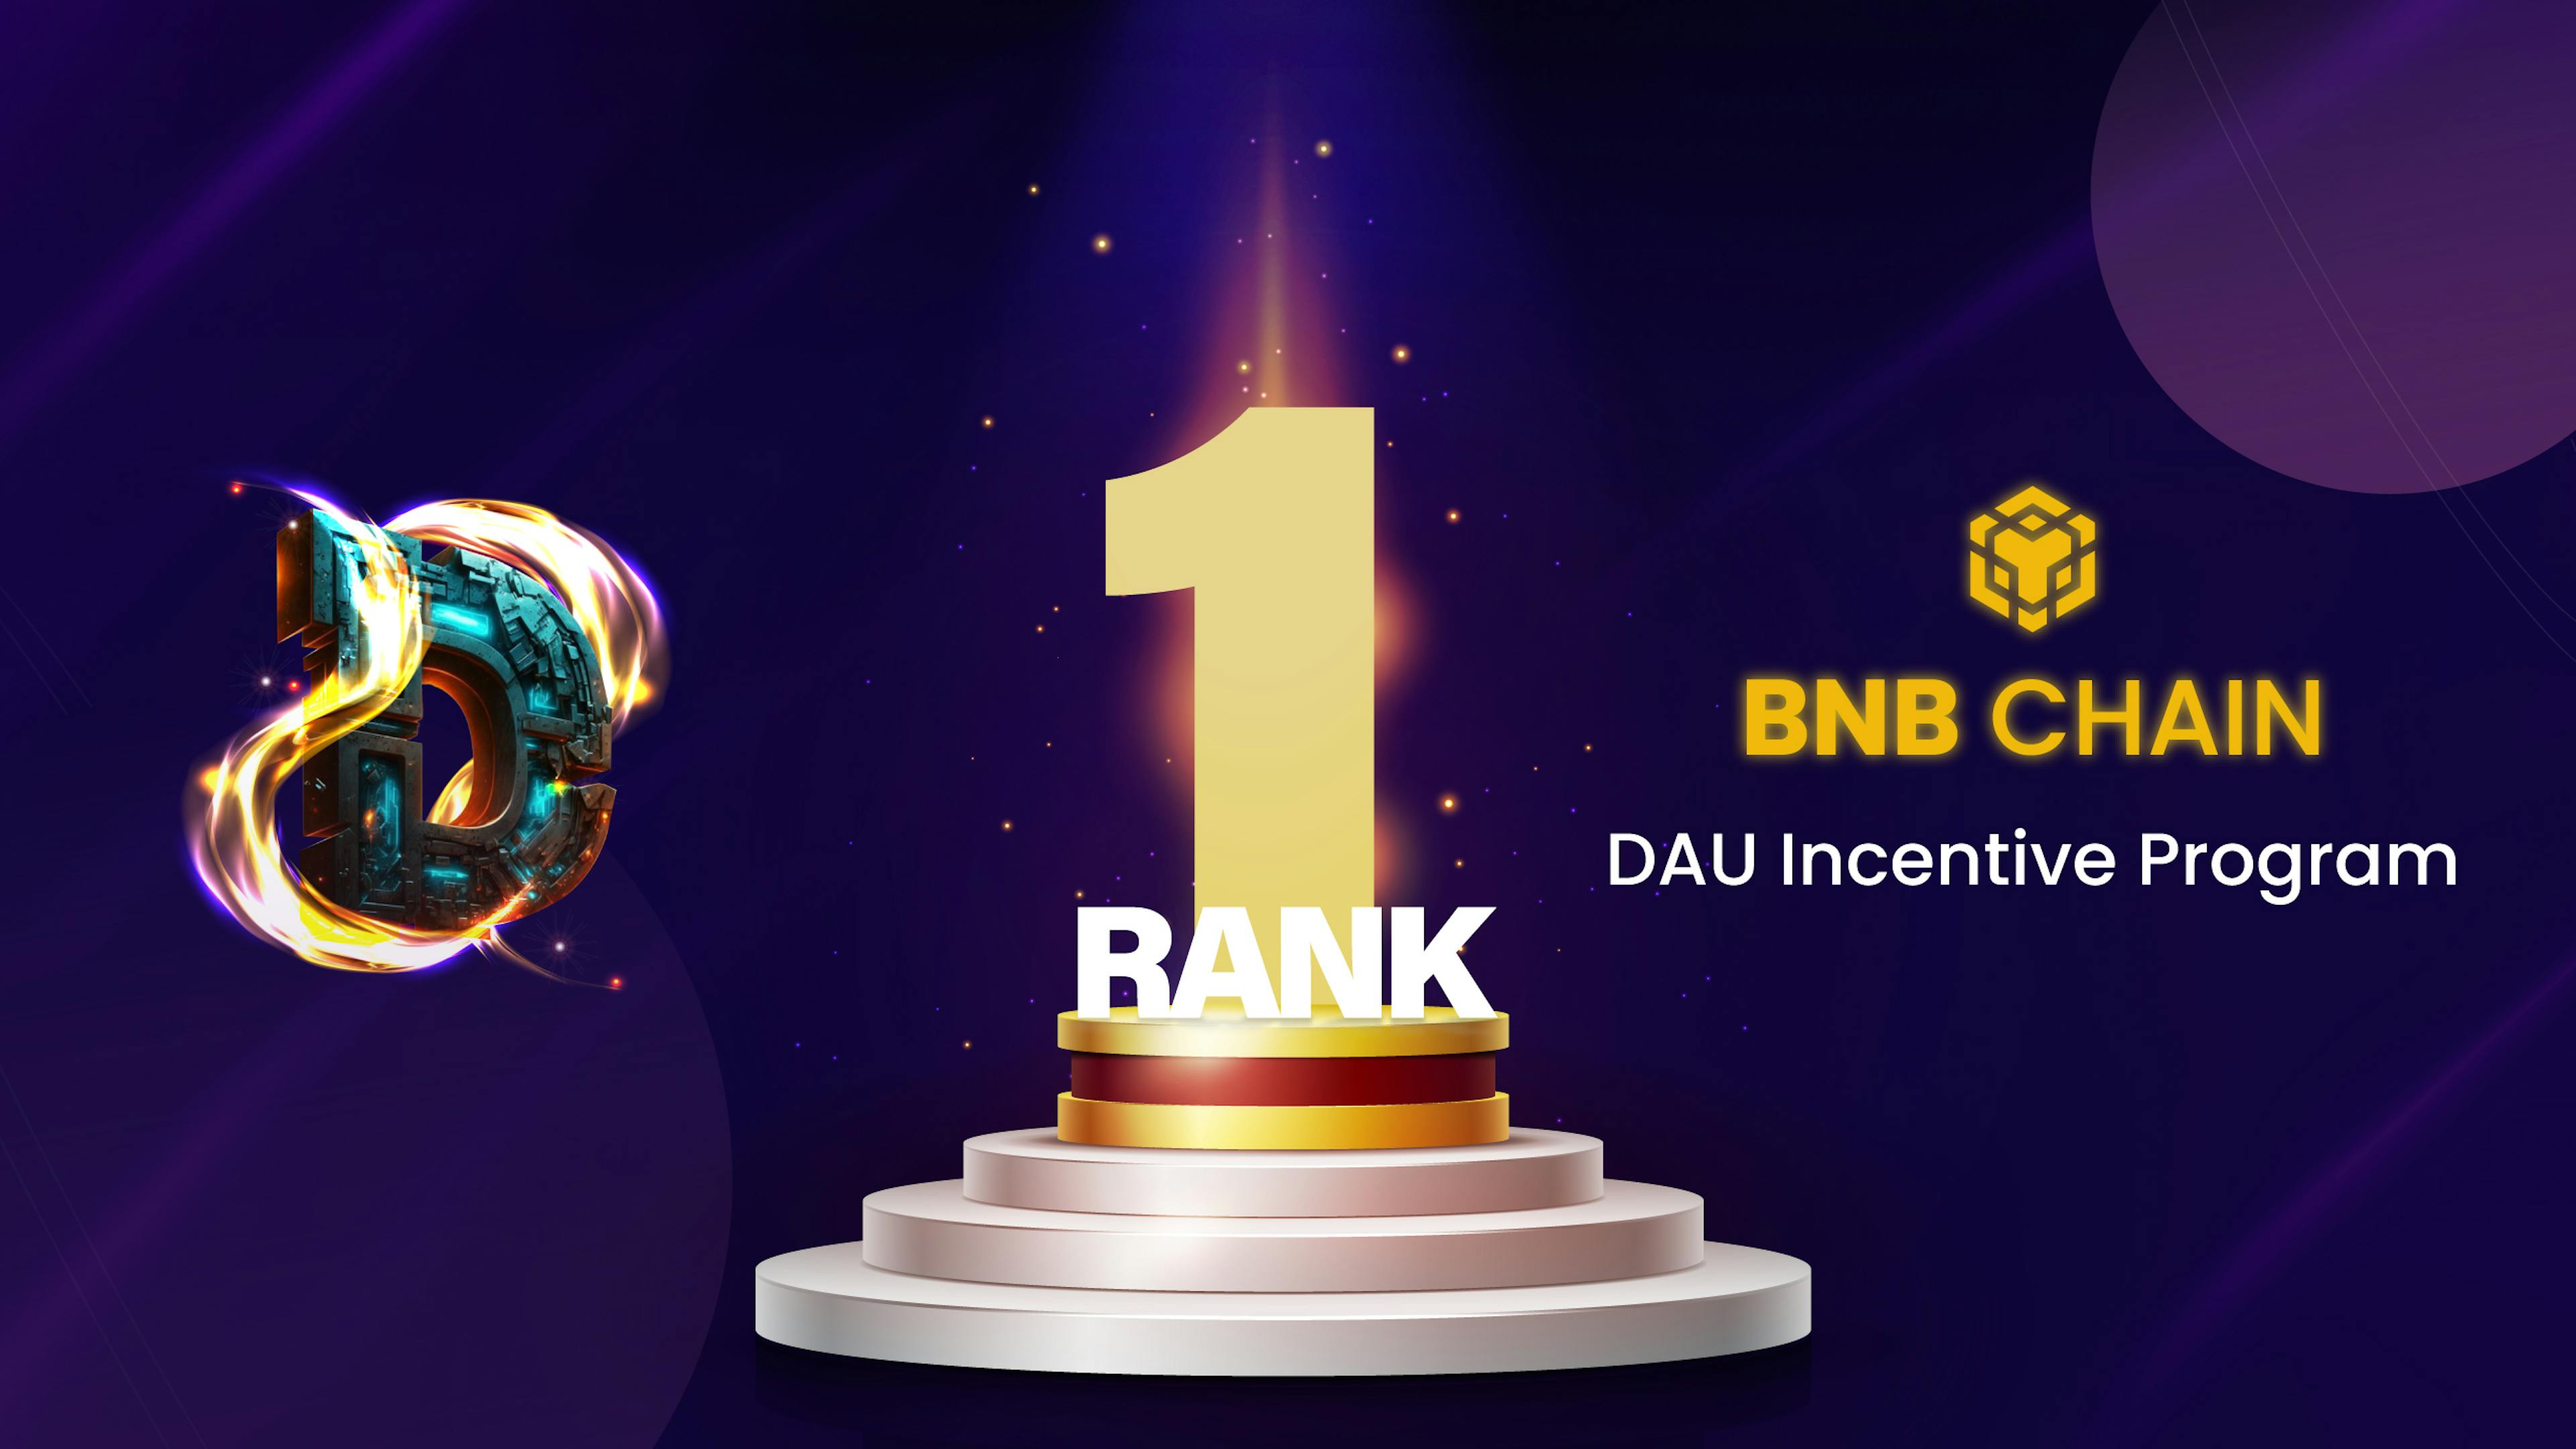 featured image - World of Dypians triumphiert im BNB Chain DAU-Anreizprogramm und sichert sich 60.000 USD in BNB